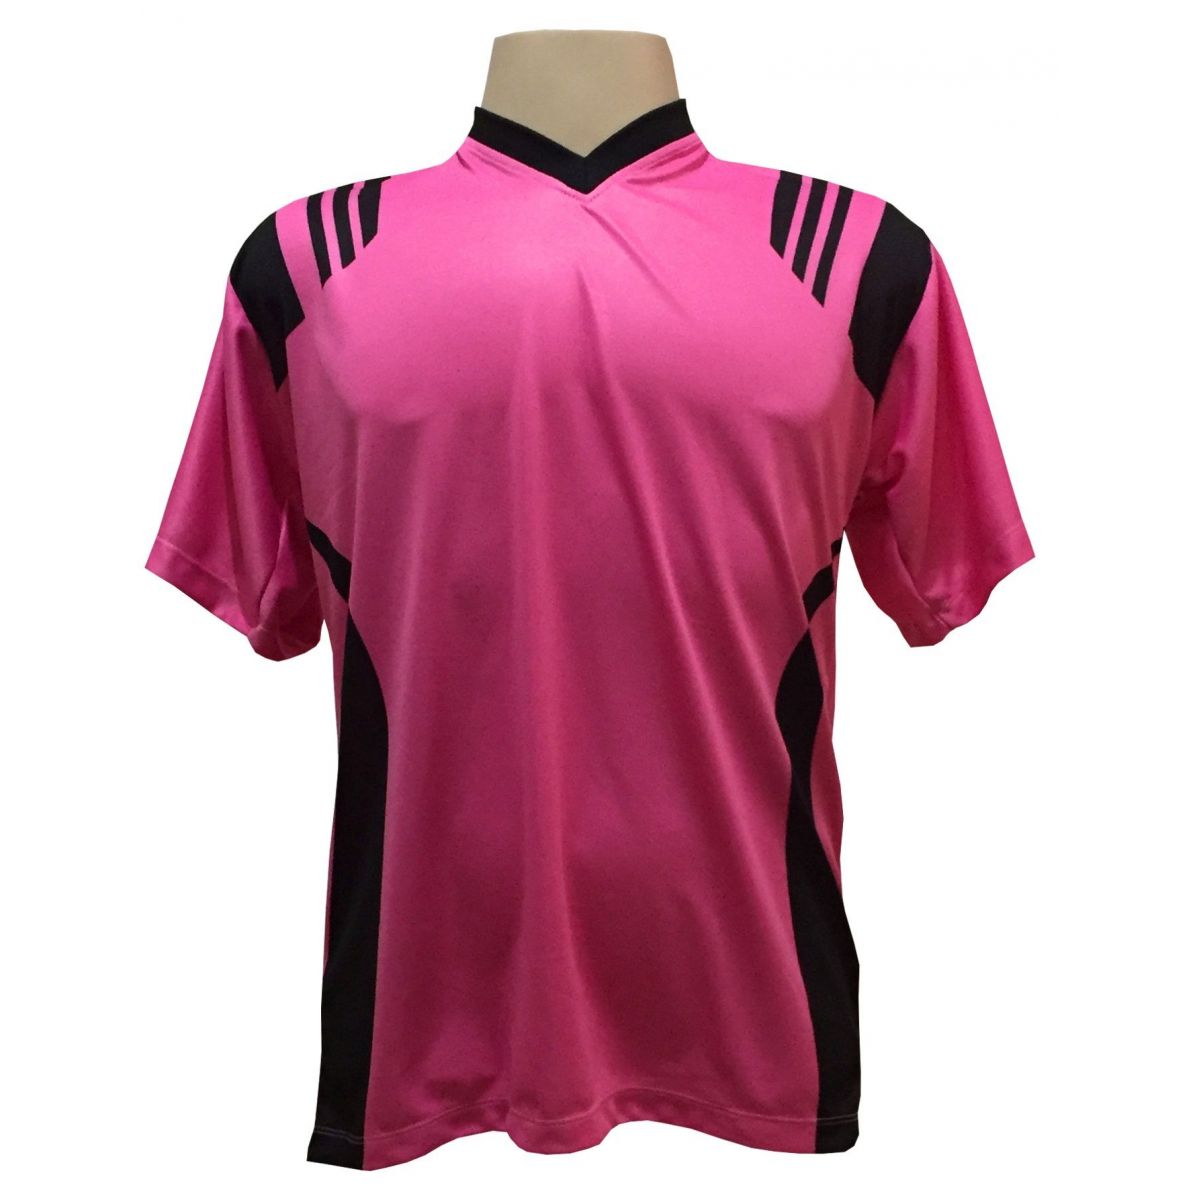 Uniforme Esportivo com 12 camisas modelo Roma Pink/Preto + 12 calções modelo Madrid Preto + Brindes